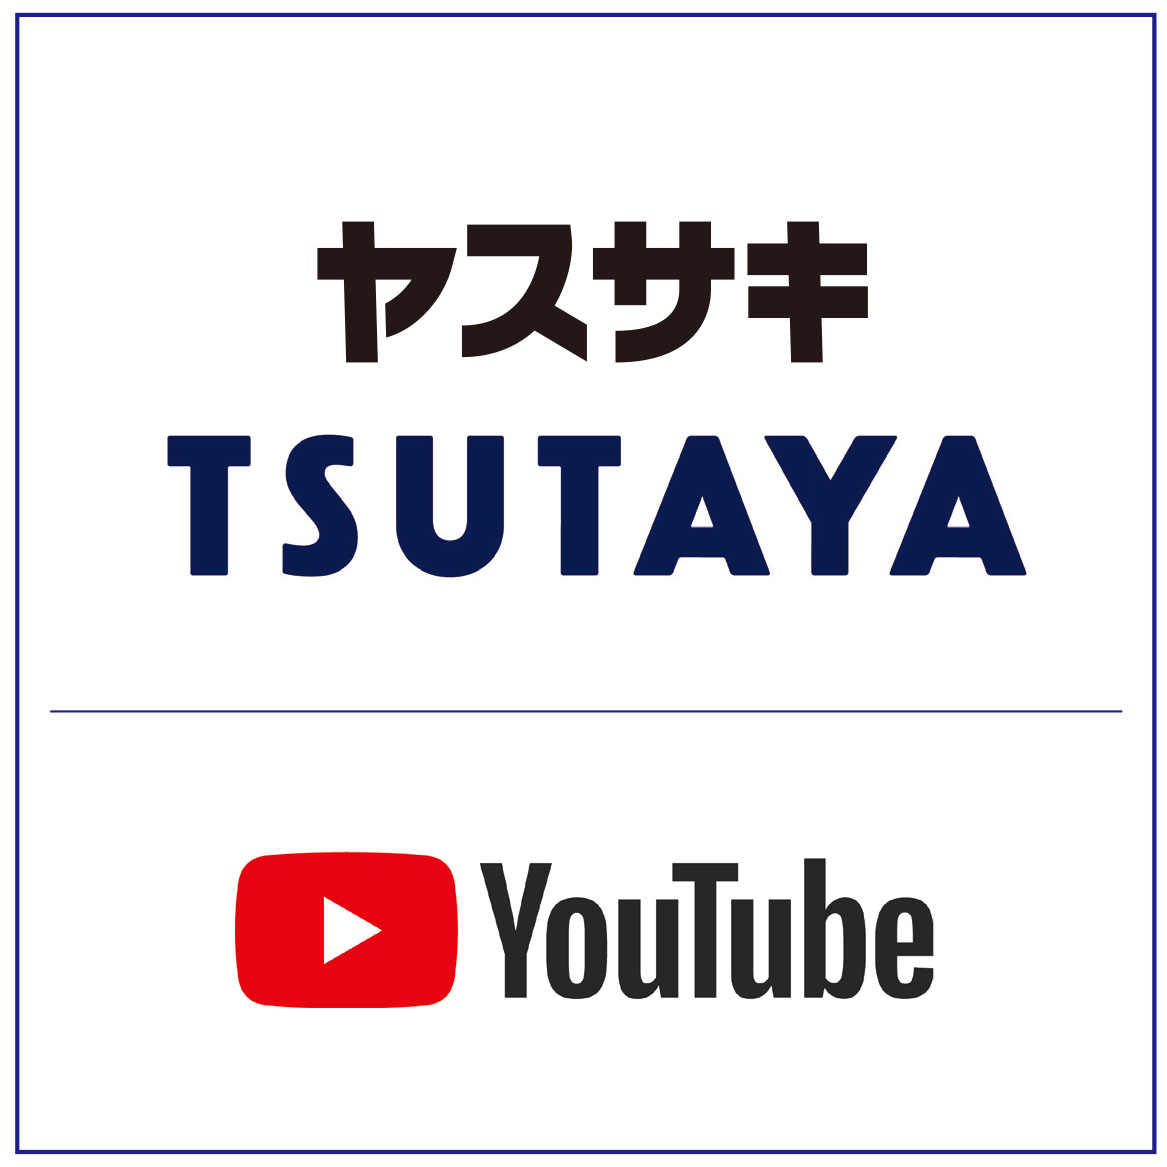 tsutaya youtube